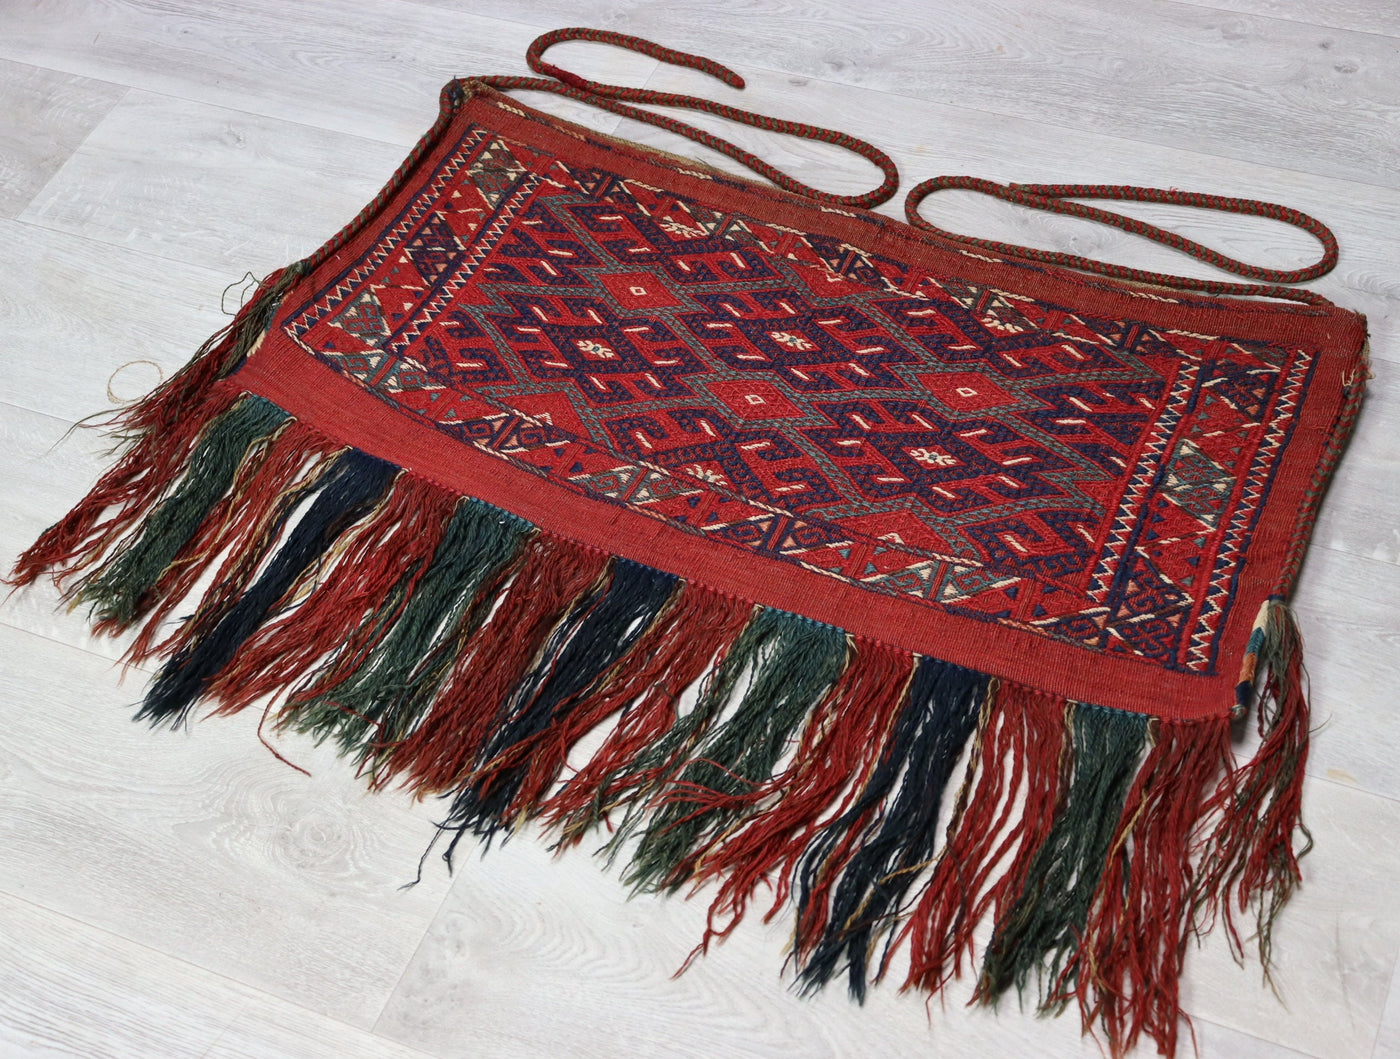 90x70 cm Antik und seltener Uzbek Nomaden Zelttasche tasche Torba aus Afghanistan jaller Turkmenistan  Nr:22/23 Teppiche Orientsbazar   